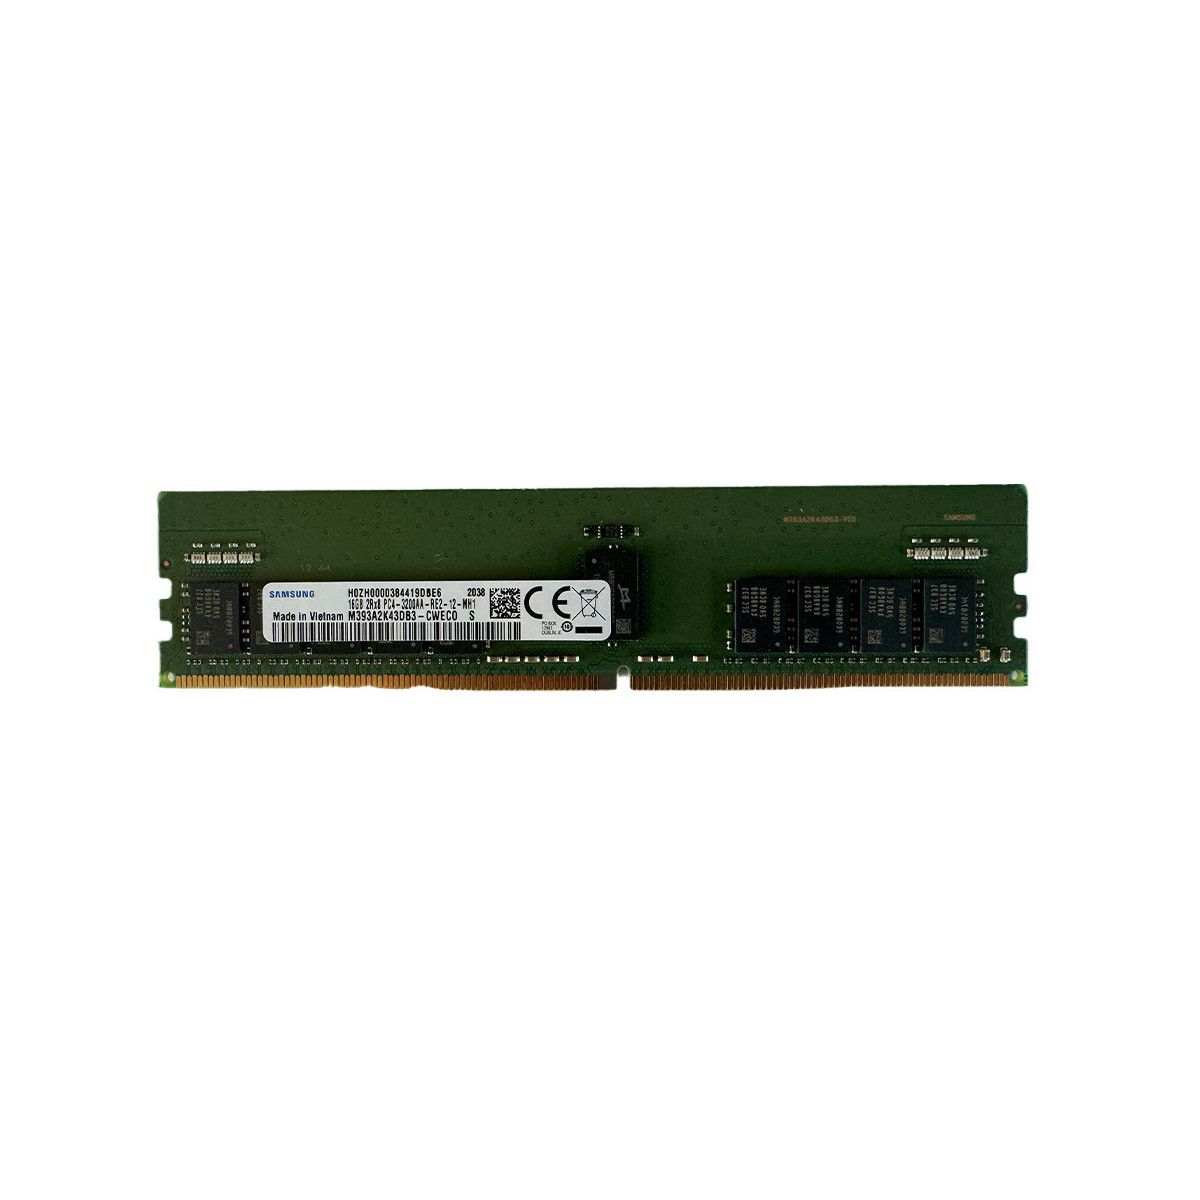 AA810826-MS - Memstar 1x 16GB DDR4-3200 RDIMM PC4-25600R - Mem-Star Kompatibel OEM Speichermedien 1 - Memstar 